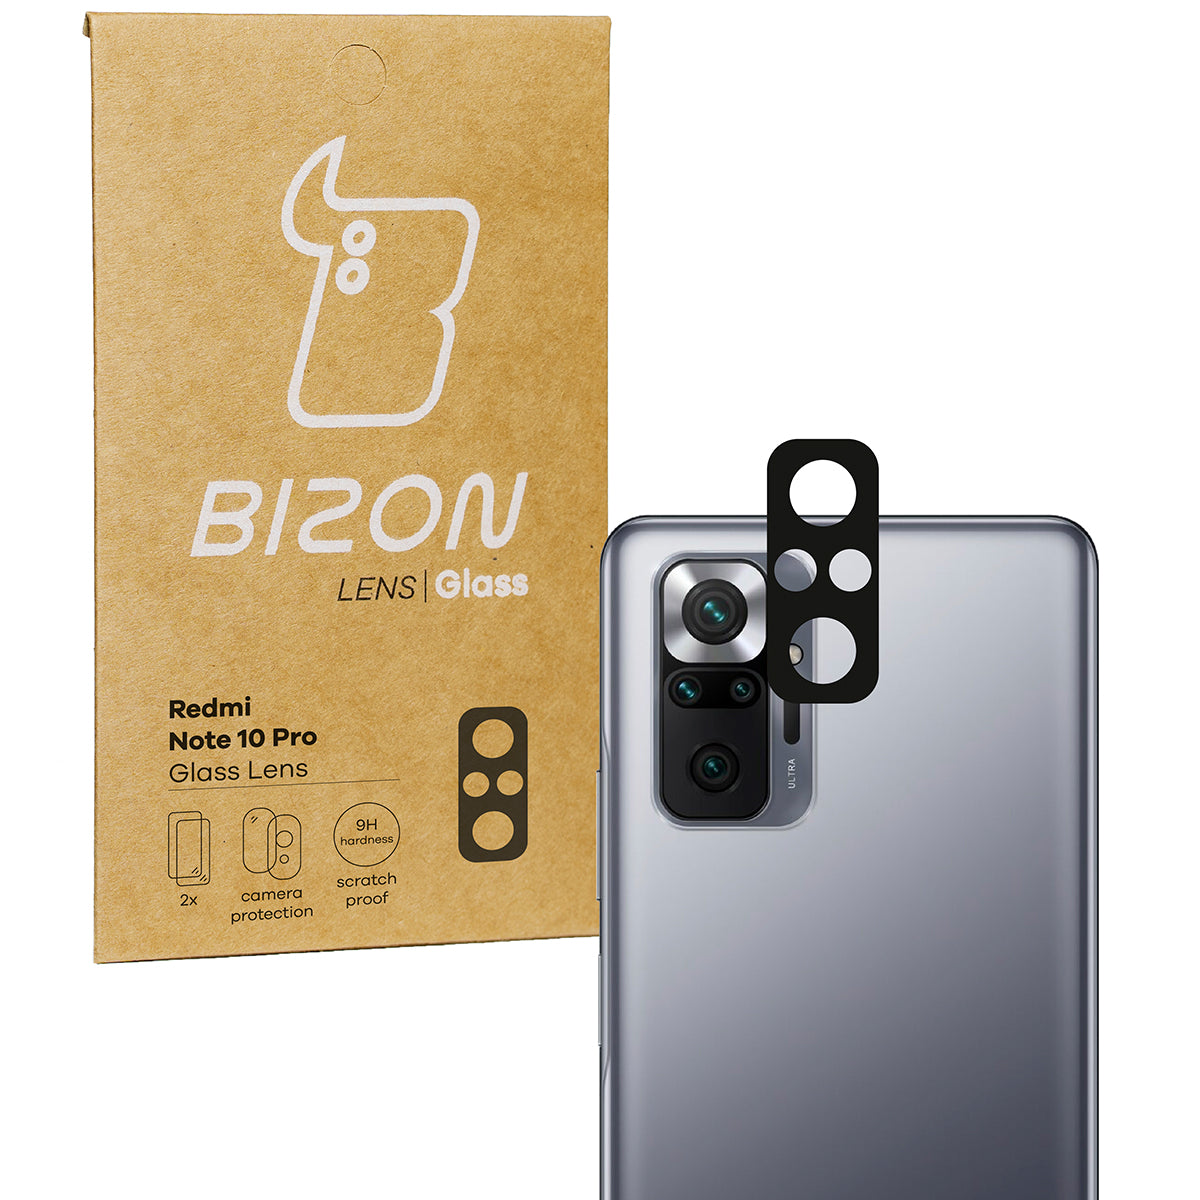 Glas für die Kamera Bizon Glass Lens für Xiaomi Redmi Note 10 Pro, 2 Stück